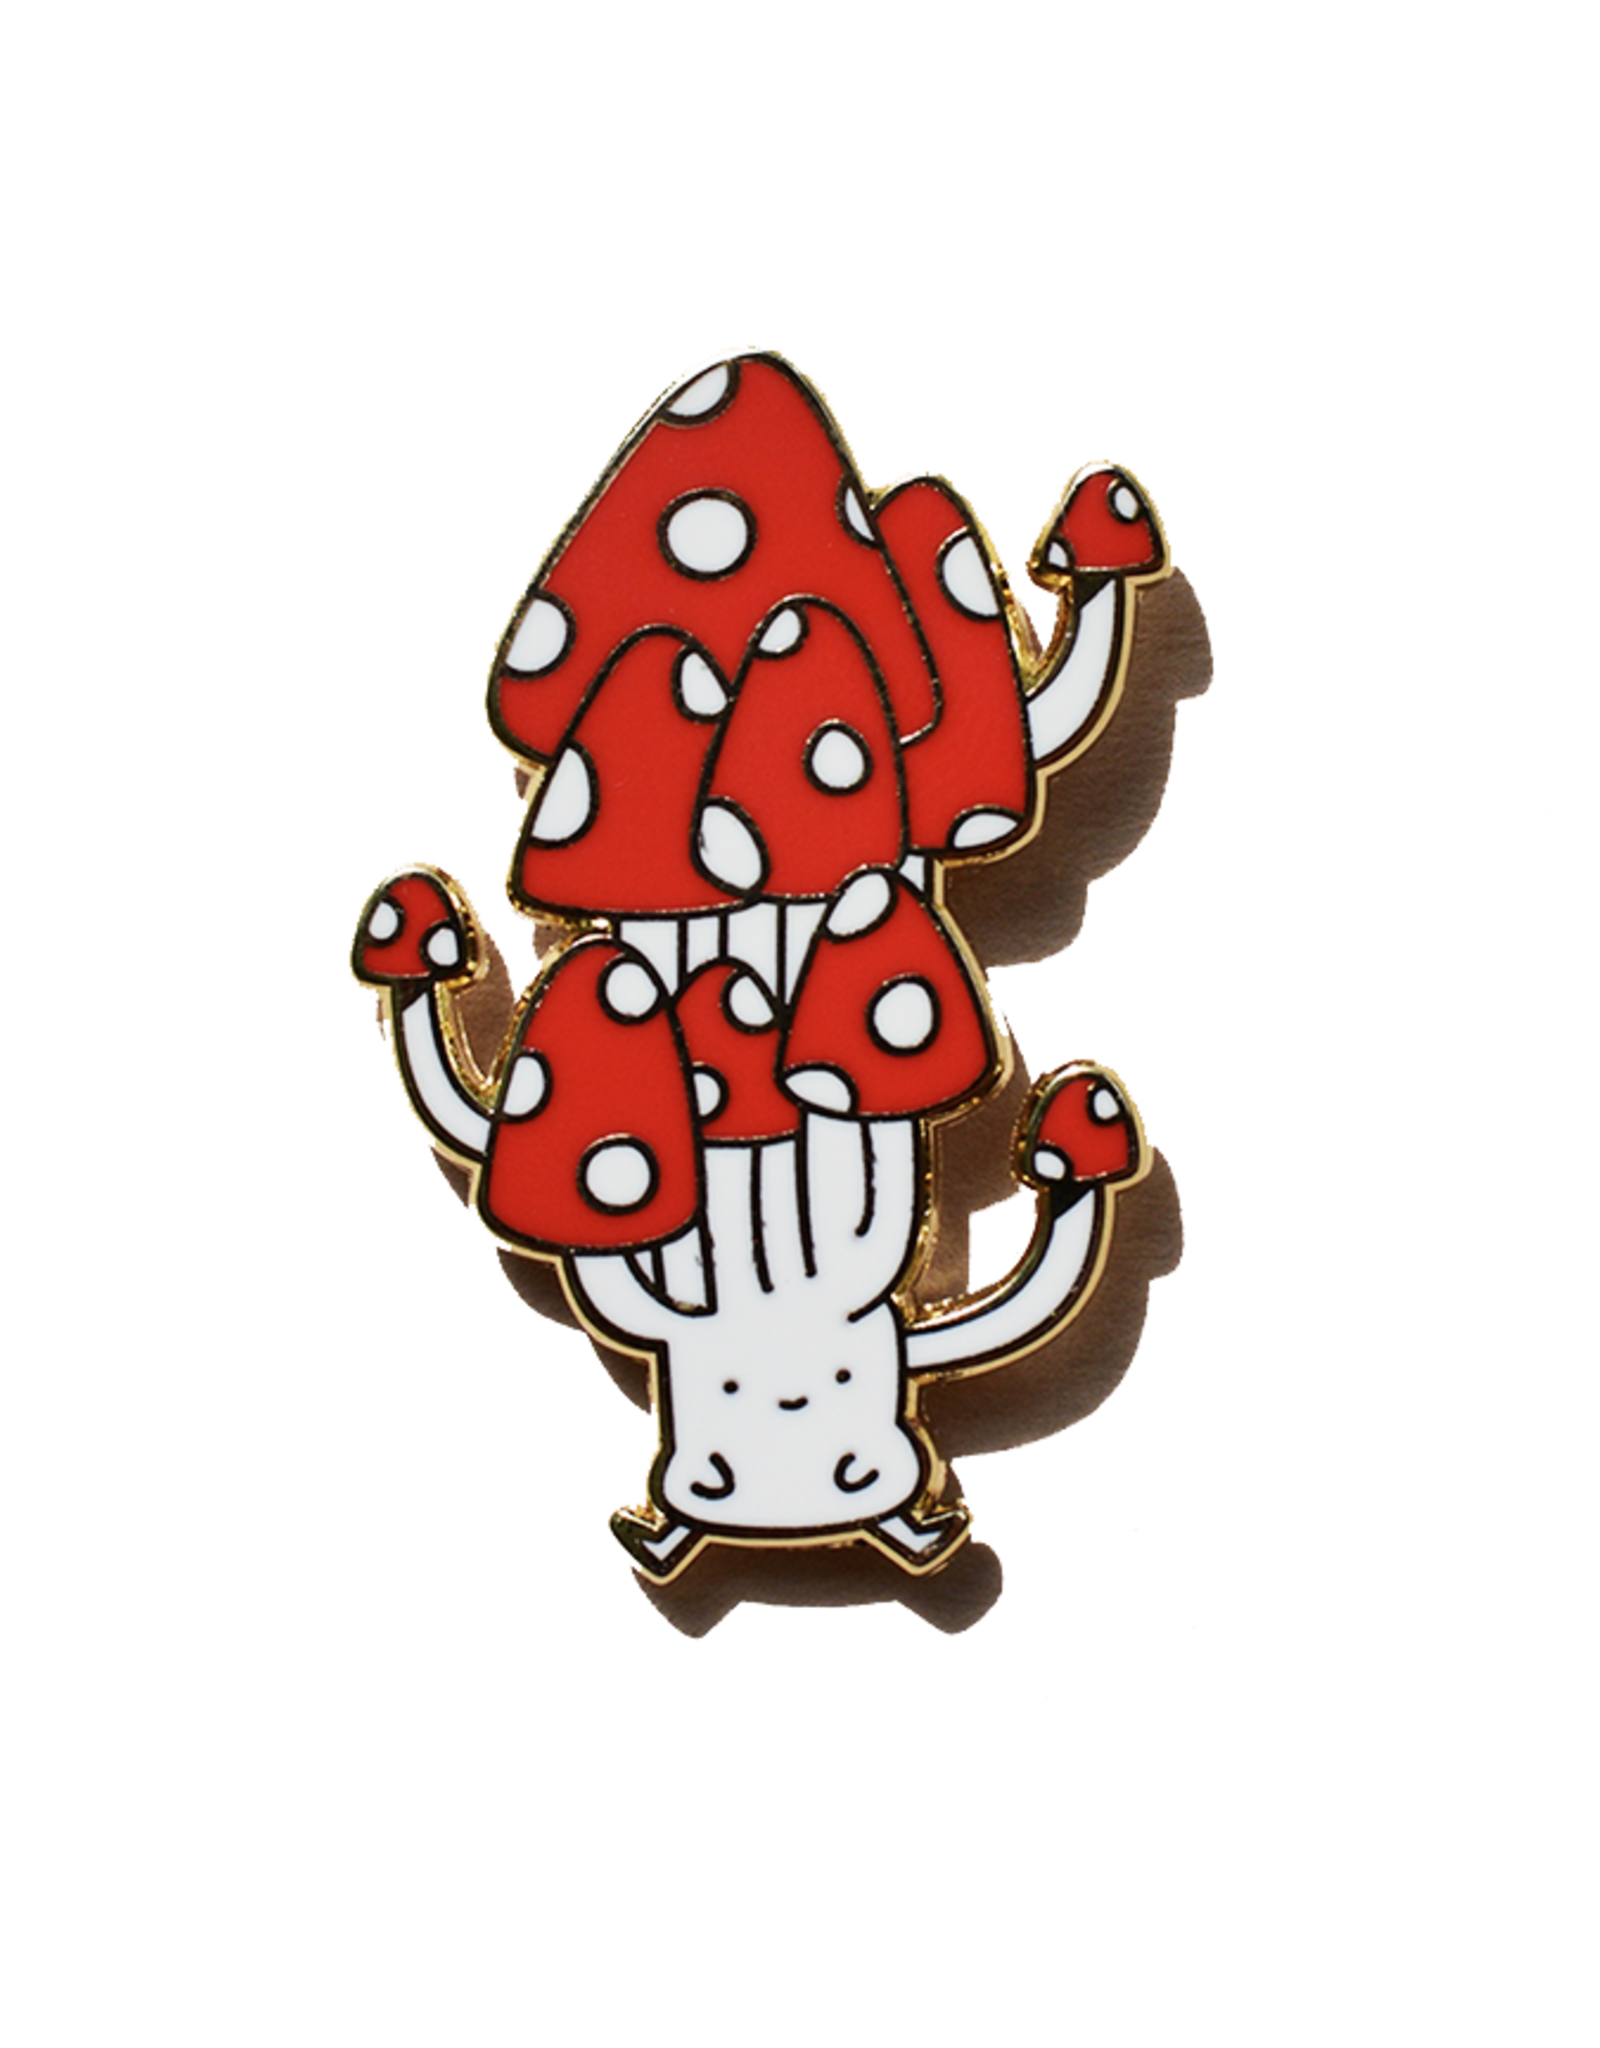 Cute Mushroom Enamel Pin